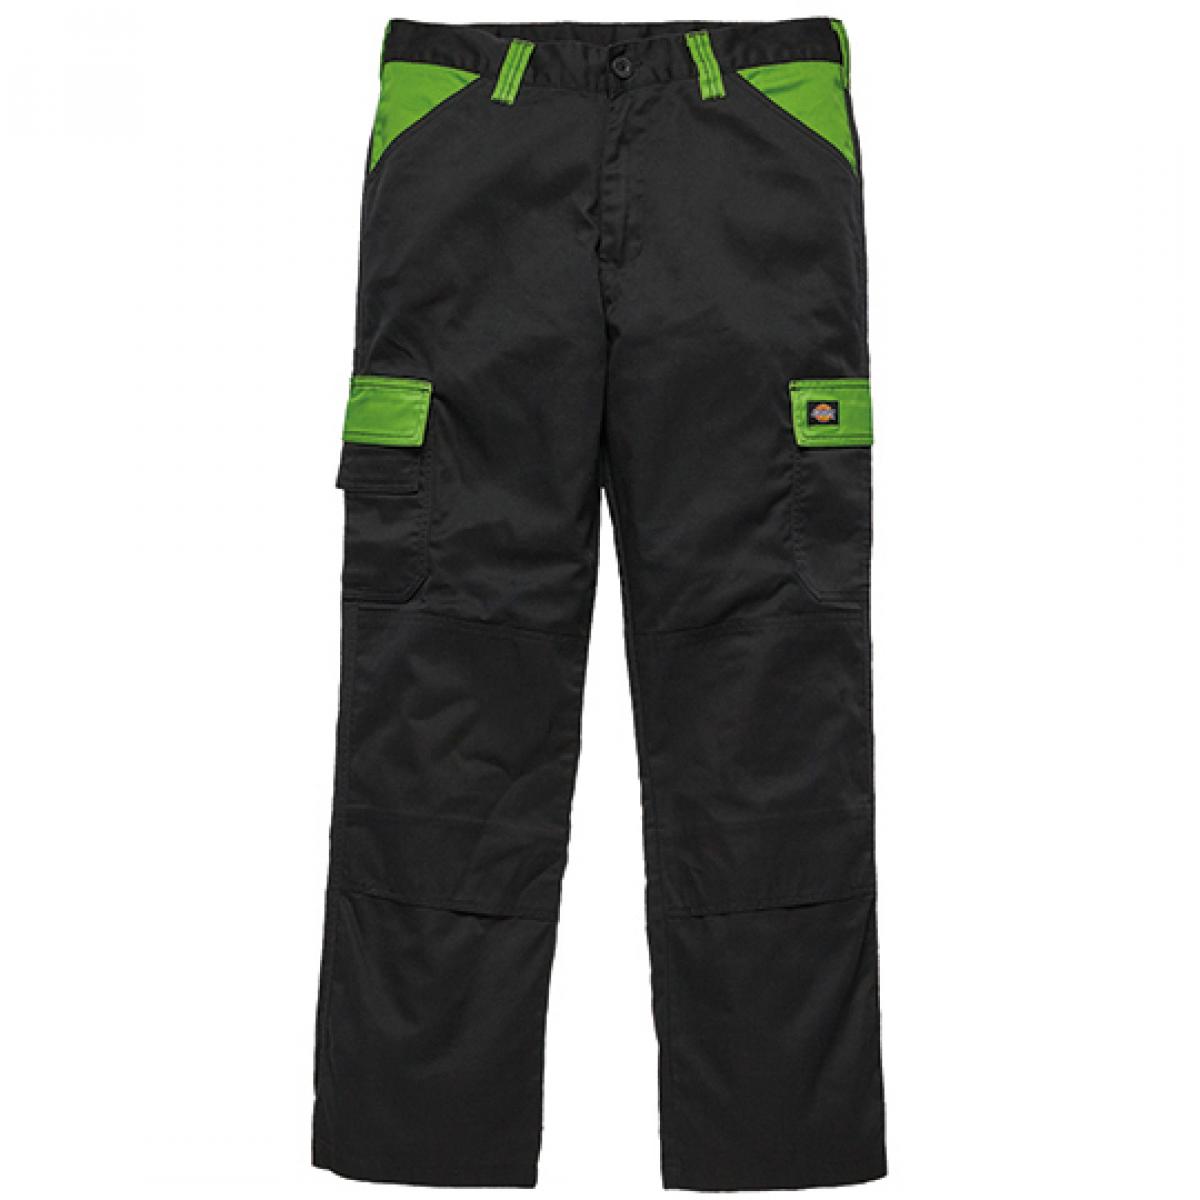 Hersteller: Dickies Herstellernummer: ED24/7 Artikelbezeichnung: Everyday Workwear Bundhose - ED24/7 Farbe: Black/Lime